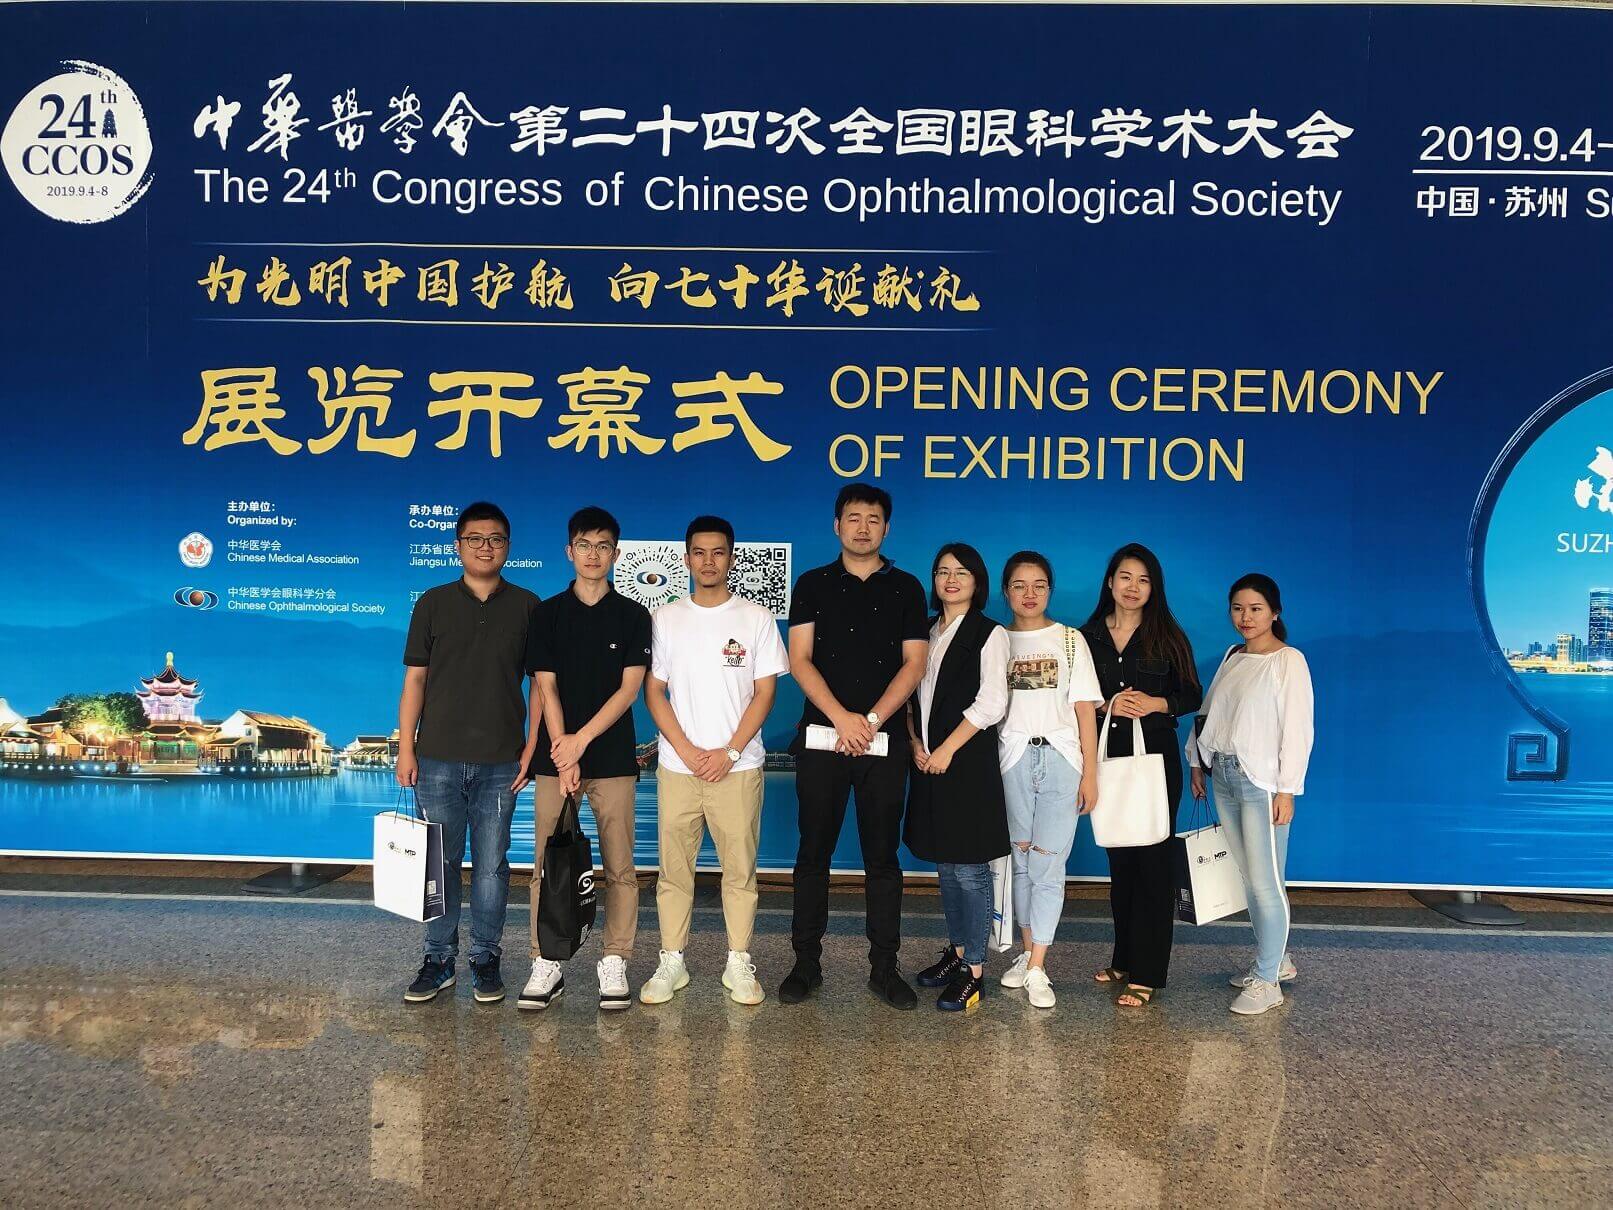 Felicitaciones por el exitoso 24 ° Congreso de la Sociedad Oftalmológica China